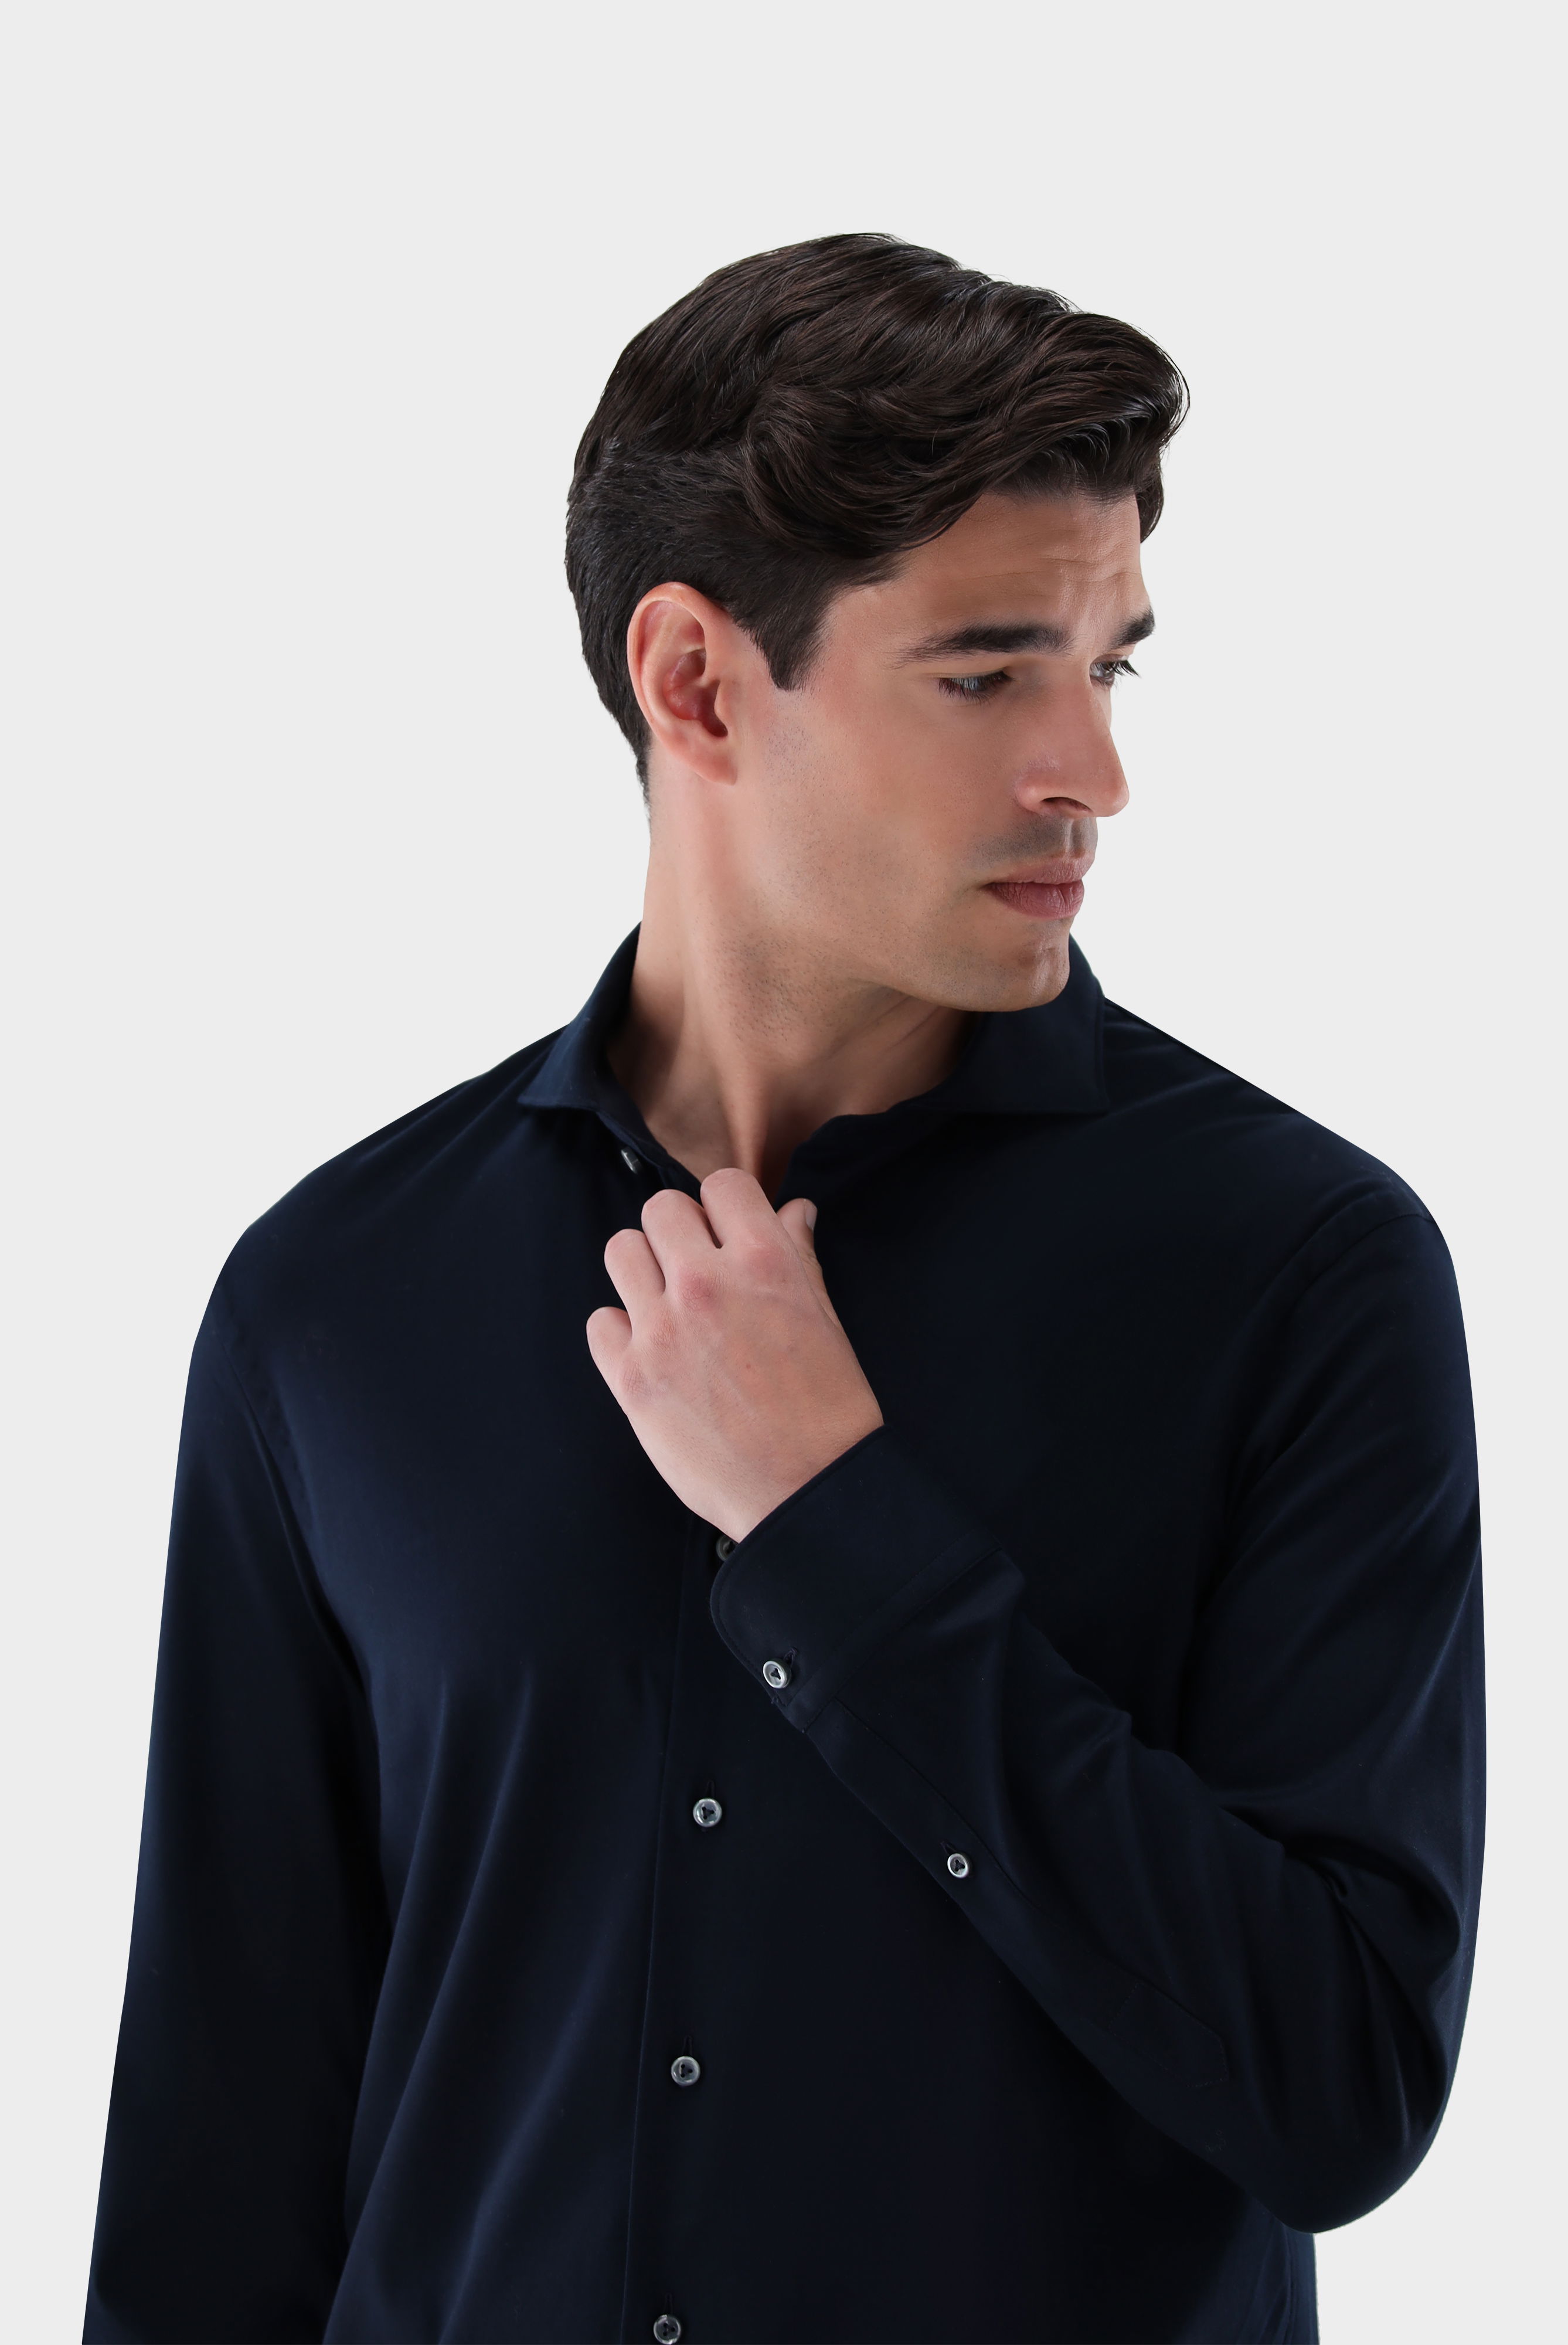 Jersey Hemden+Jersey Hemd aus Schweizer Baumwolle Slim Fit+20.1682.UC.180031.790.XL